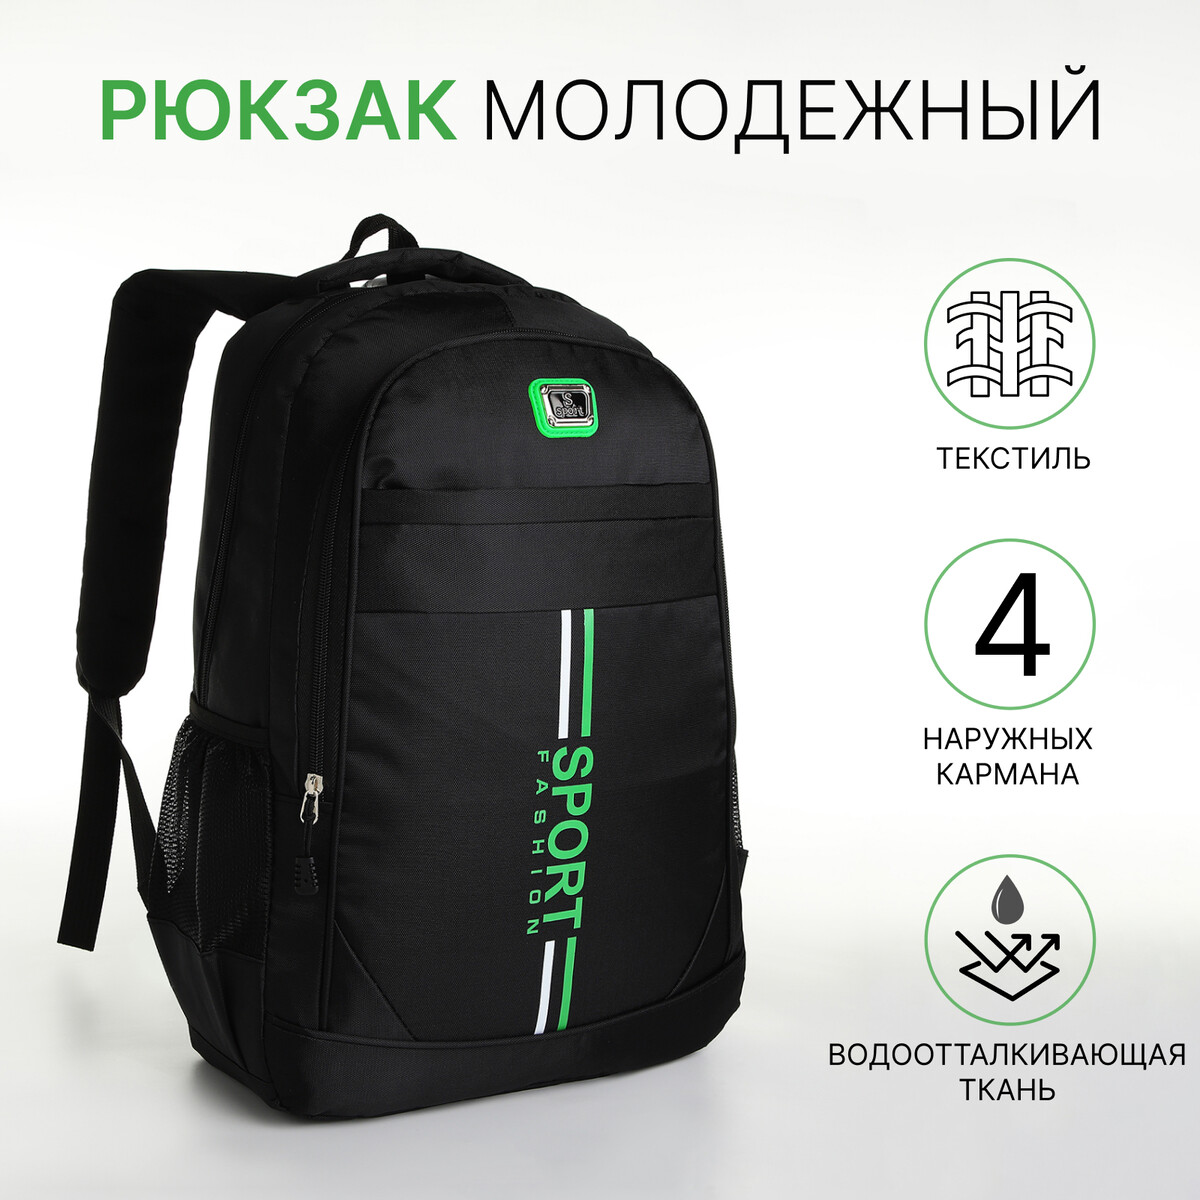 Рюкзак молодежный на молнии, 4 кармана, цвет черный/зеленый рюкзак школьный из текстиля на молнии 3 кармана зеленый